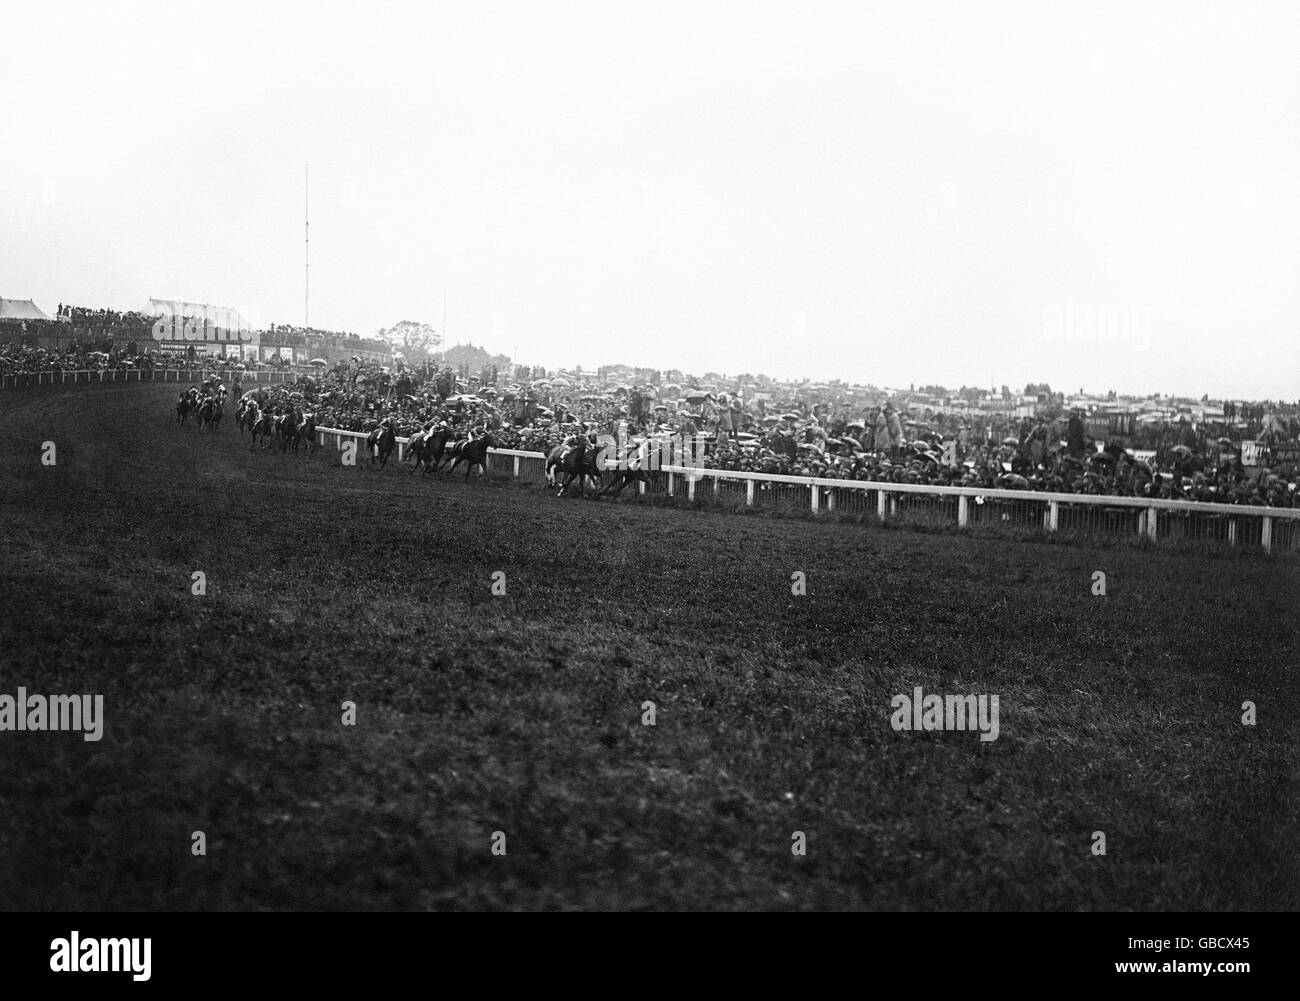 Pferderennen - The Derby - Epsom Downs - 1925. Die Szene, in der die Pferde Tattenham Corner umrundeten. Stockfoto